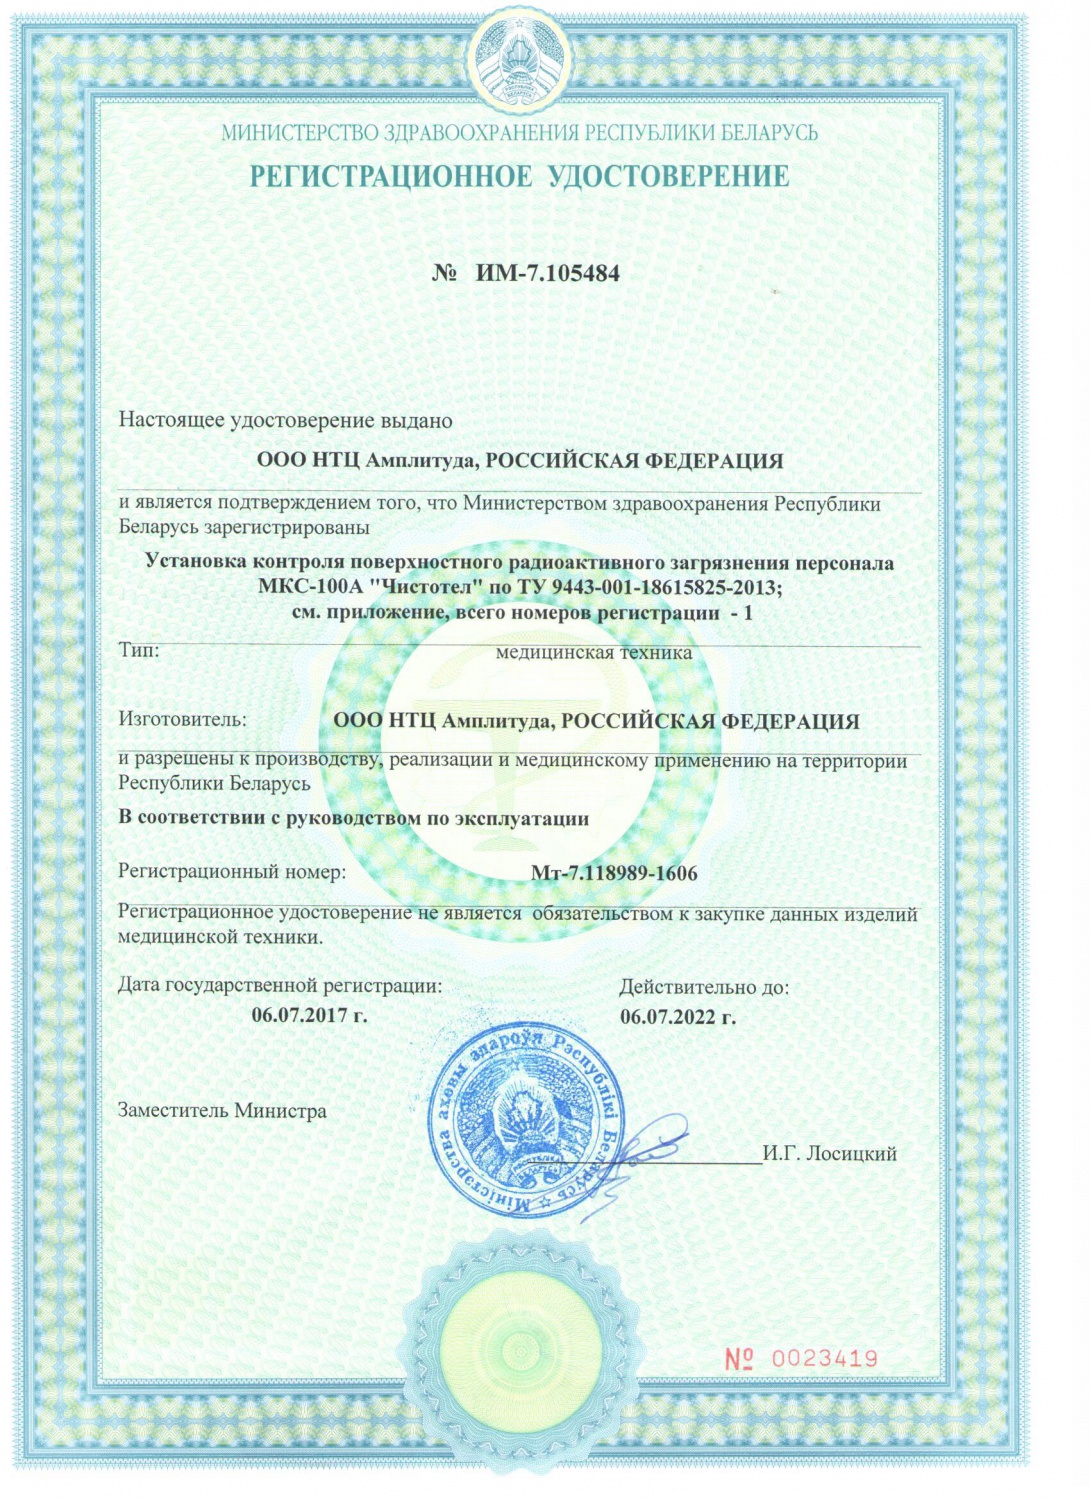 Компания  "НТЦ Амплитуда" получила Государственную регистрацию Министерства здравоохранения  Республики Беларусь на изделие медицинского назначения - установку контроля поверхностного радиоактивного загрязнения персонала МКС-100А «Чистотел».